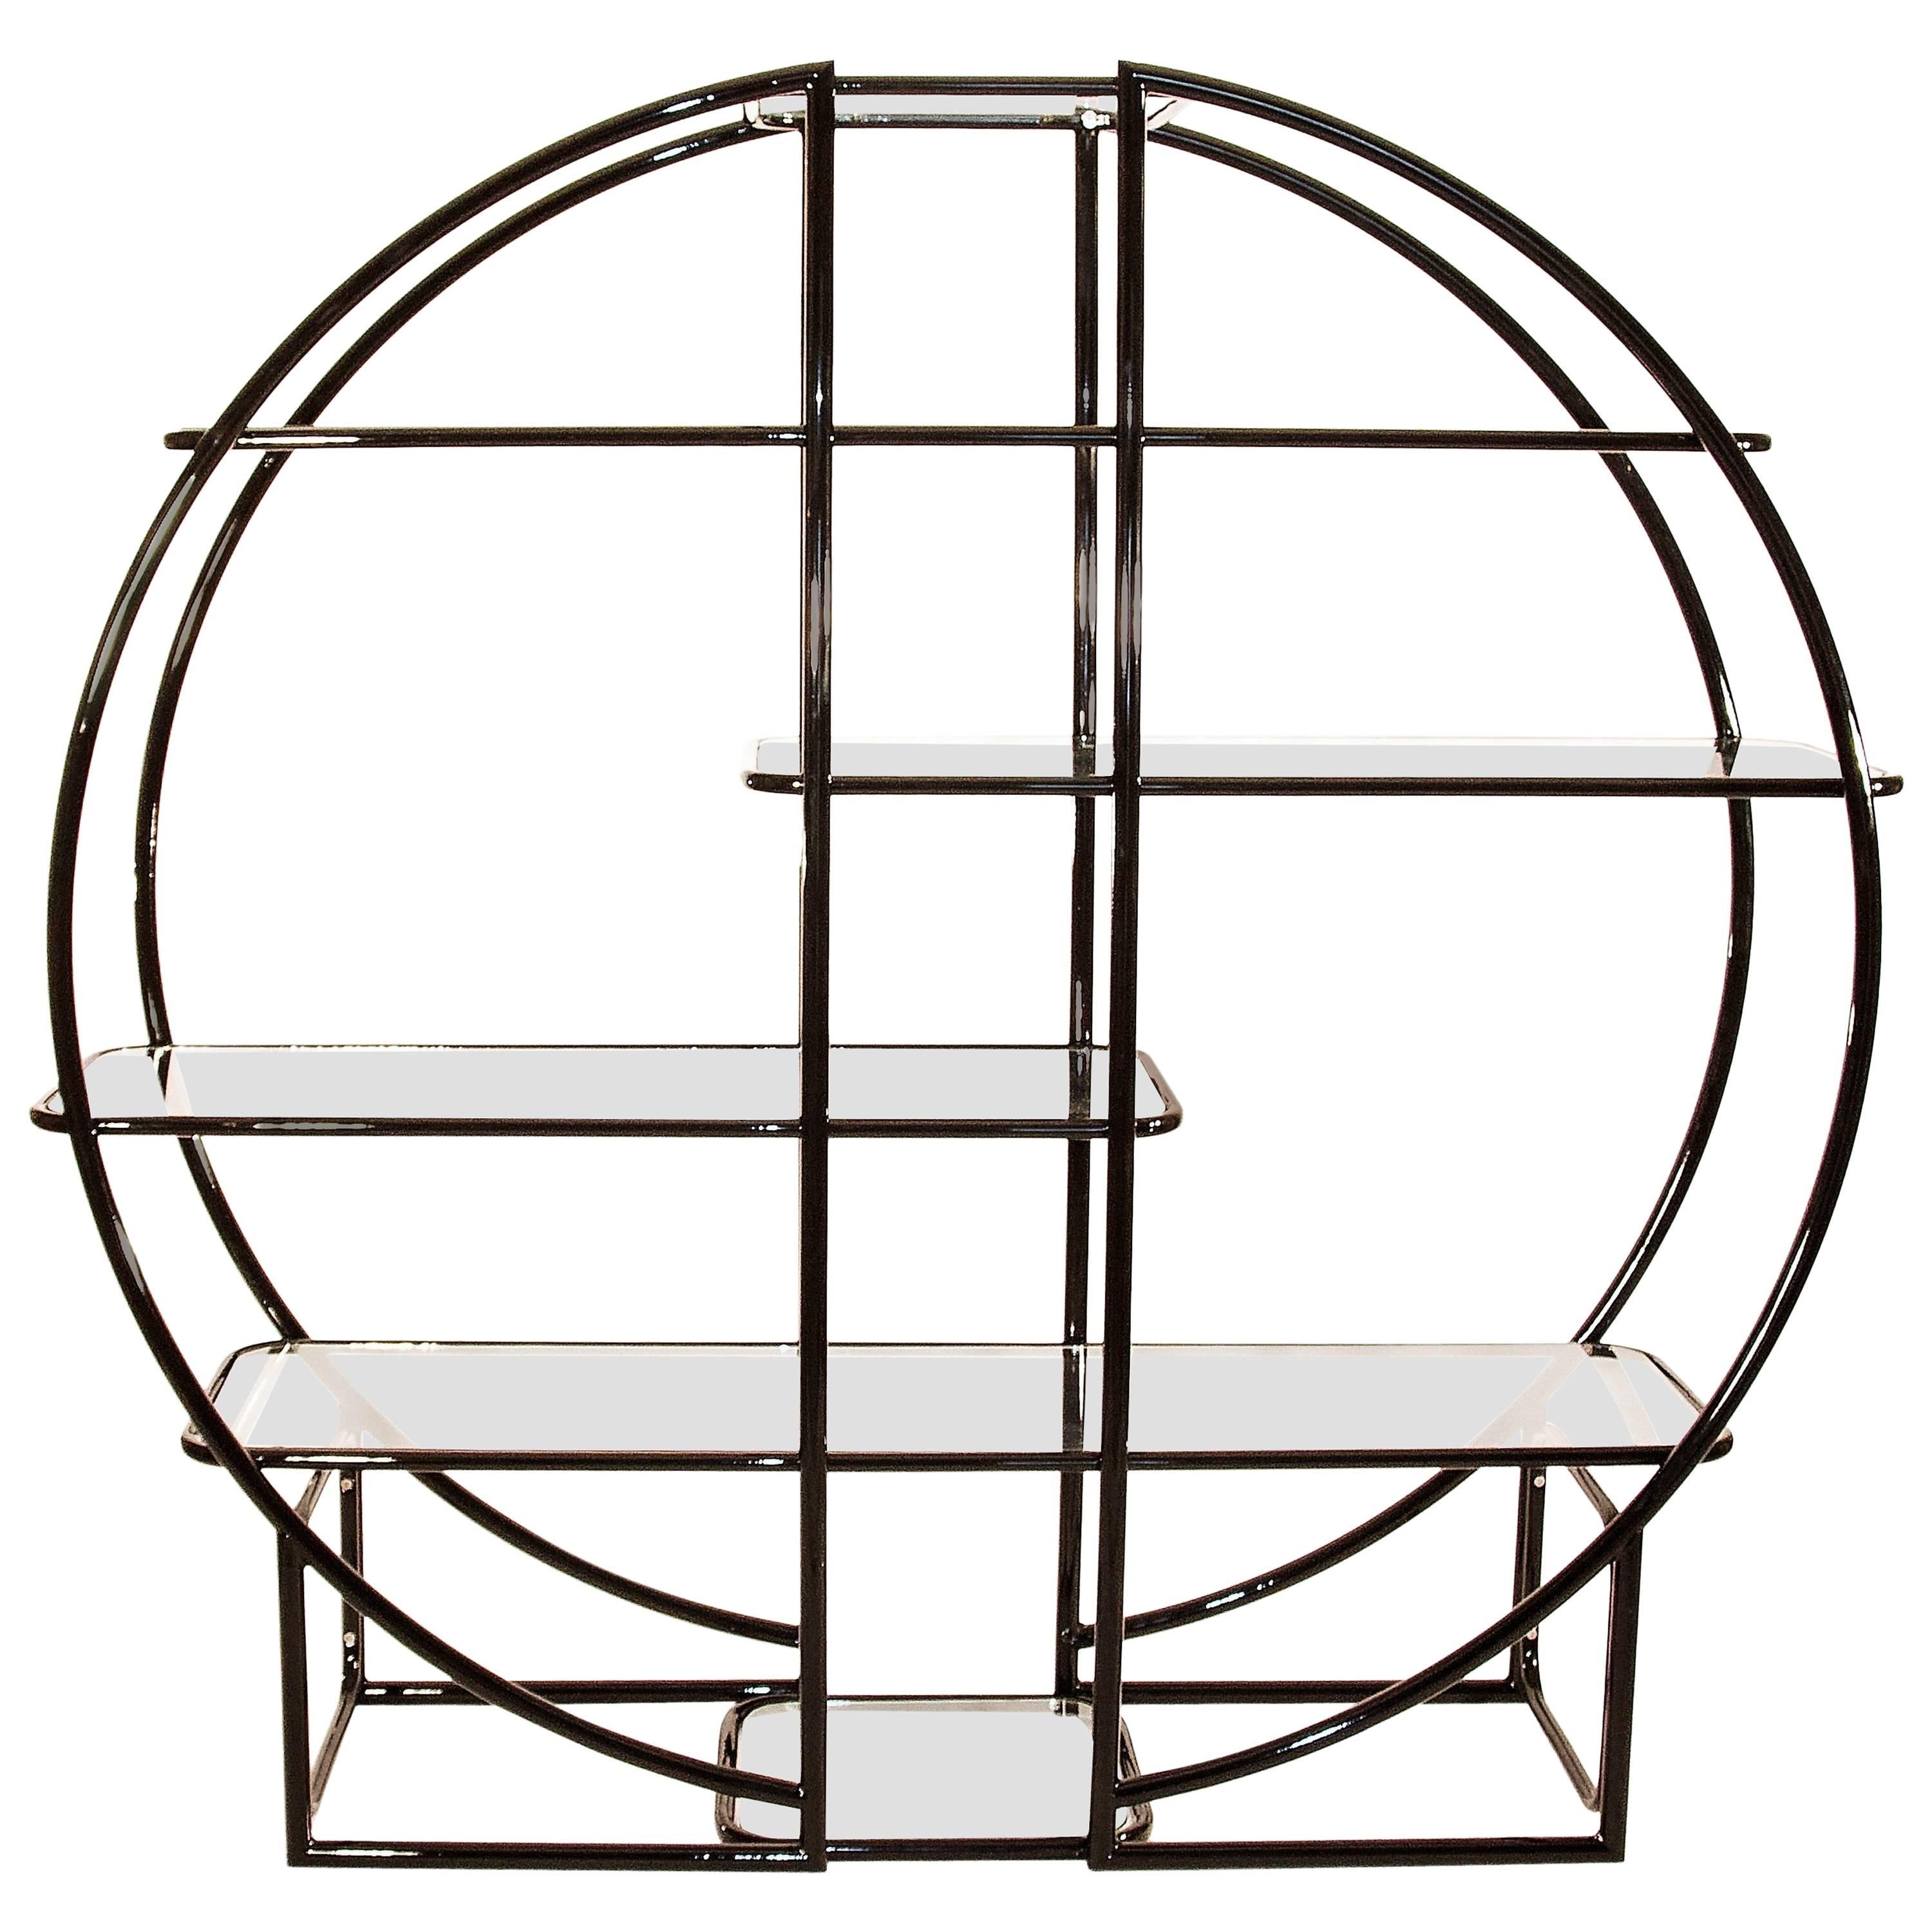 Circular Black Étagère with Glass Display Shelves